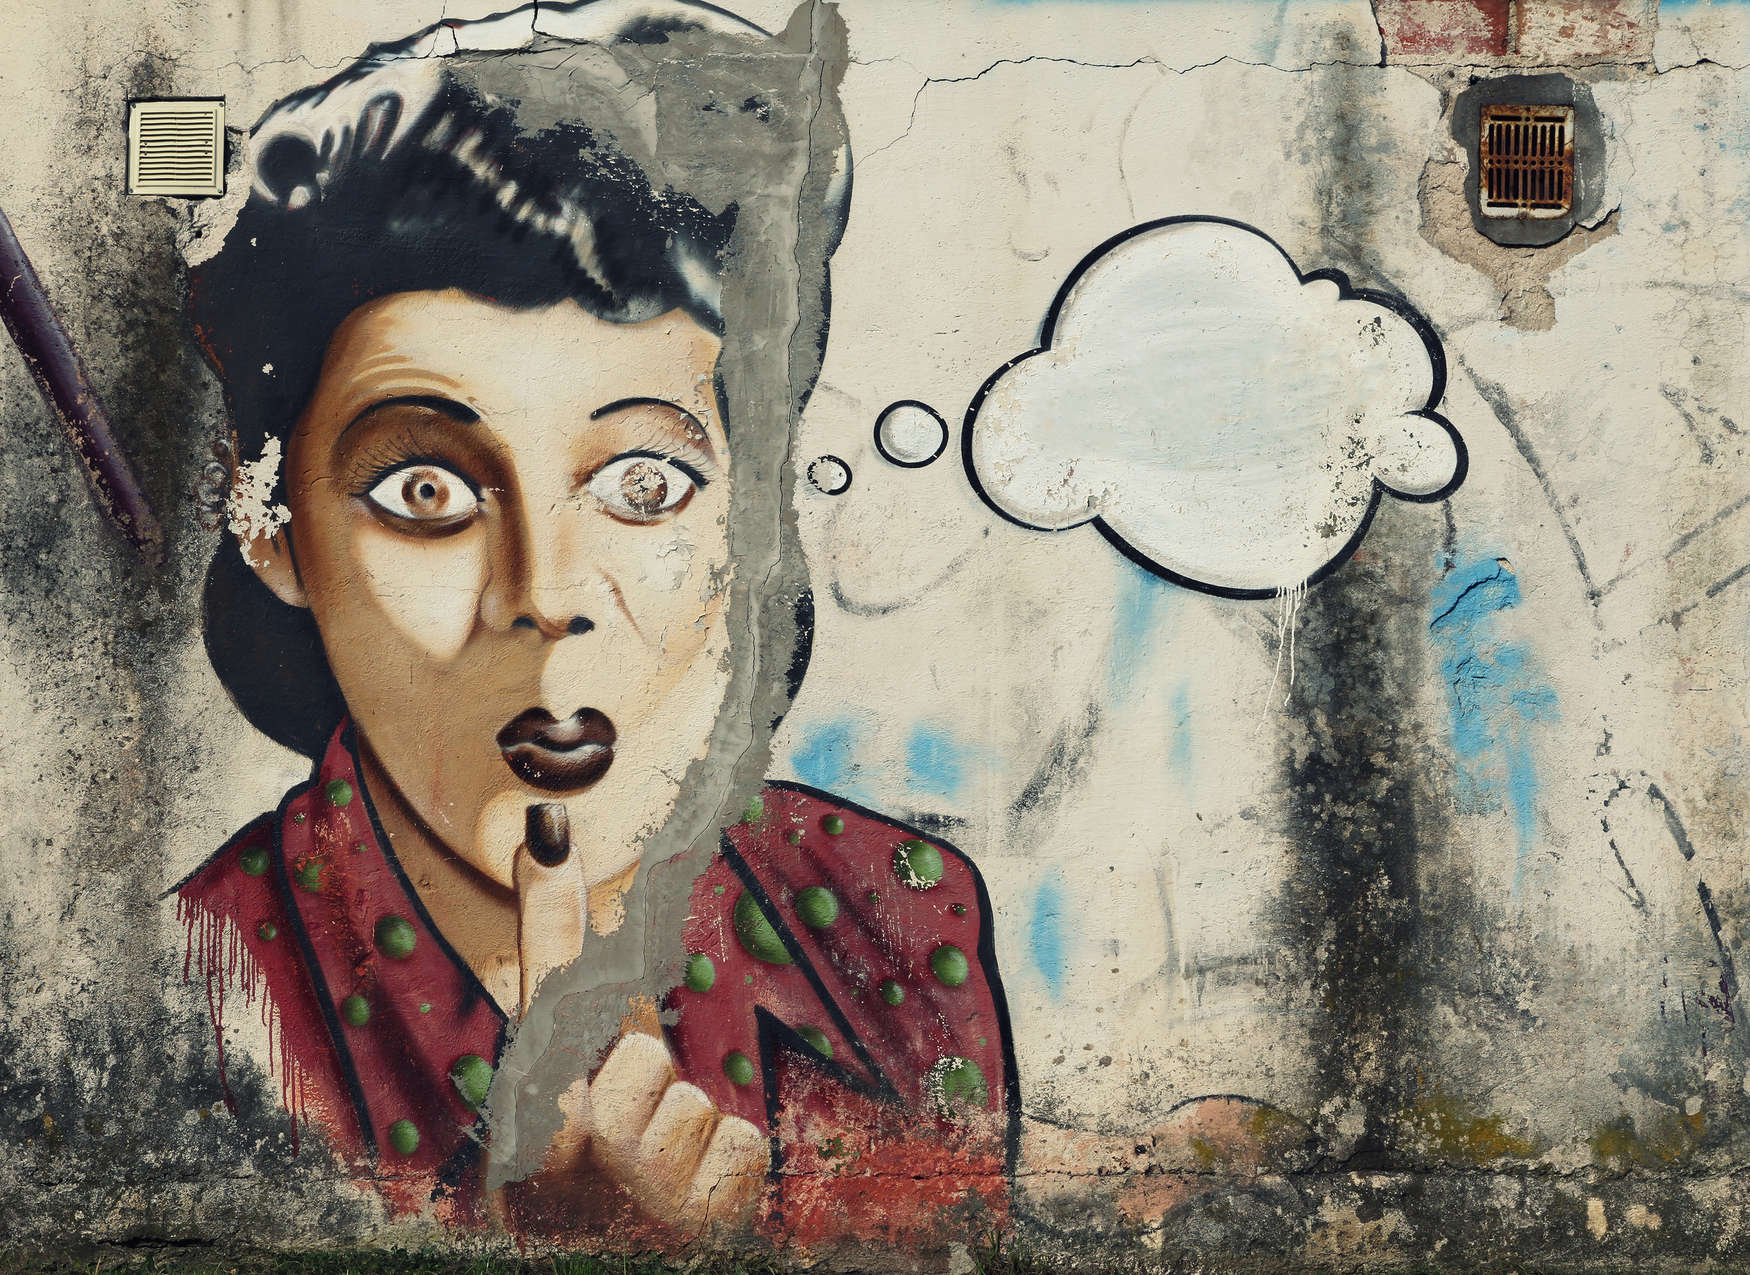             Papier peint panoramique femme avec bulle de pensée en graffiti sur mur de pierre - gris, rouge, blanc
        